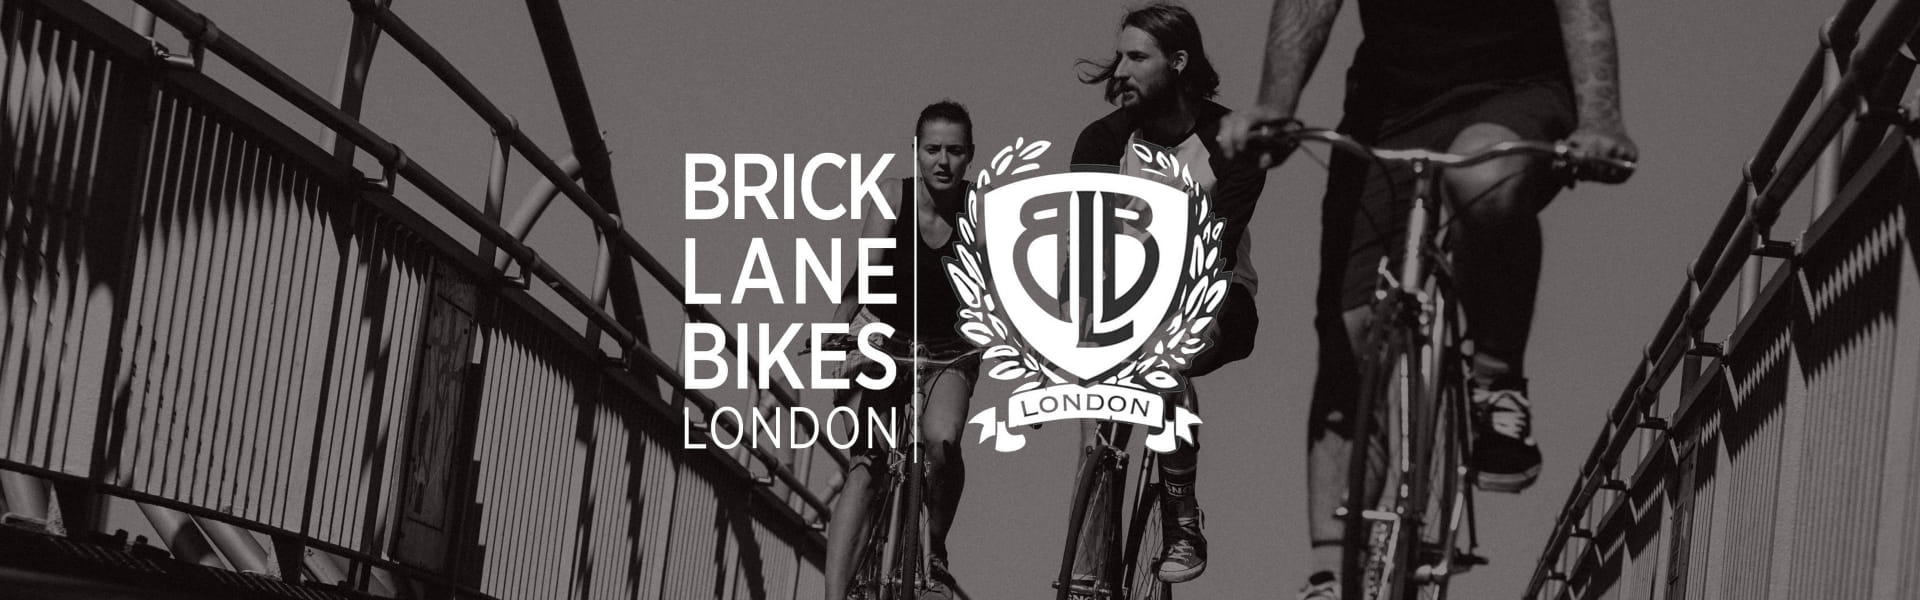 BLB Brick Lane Bikes